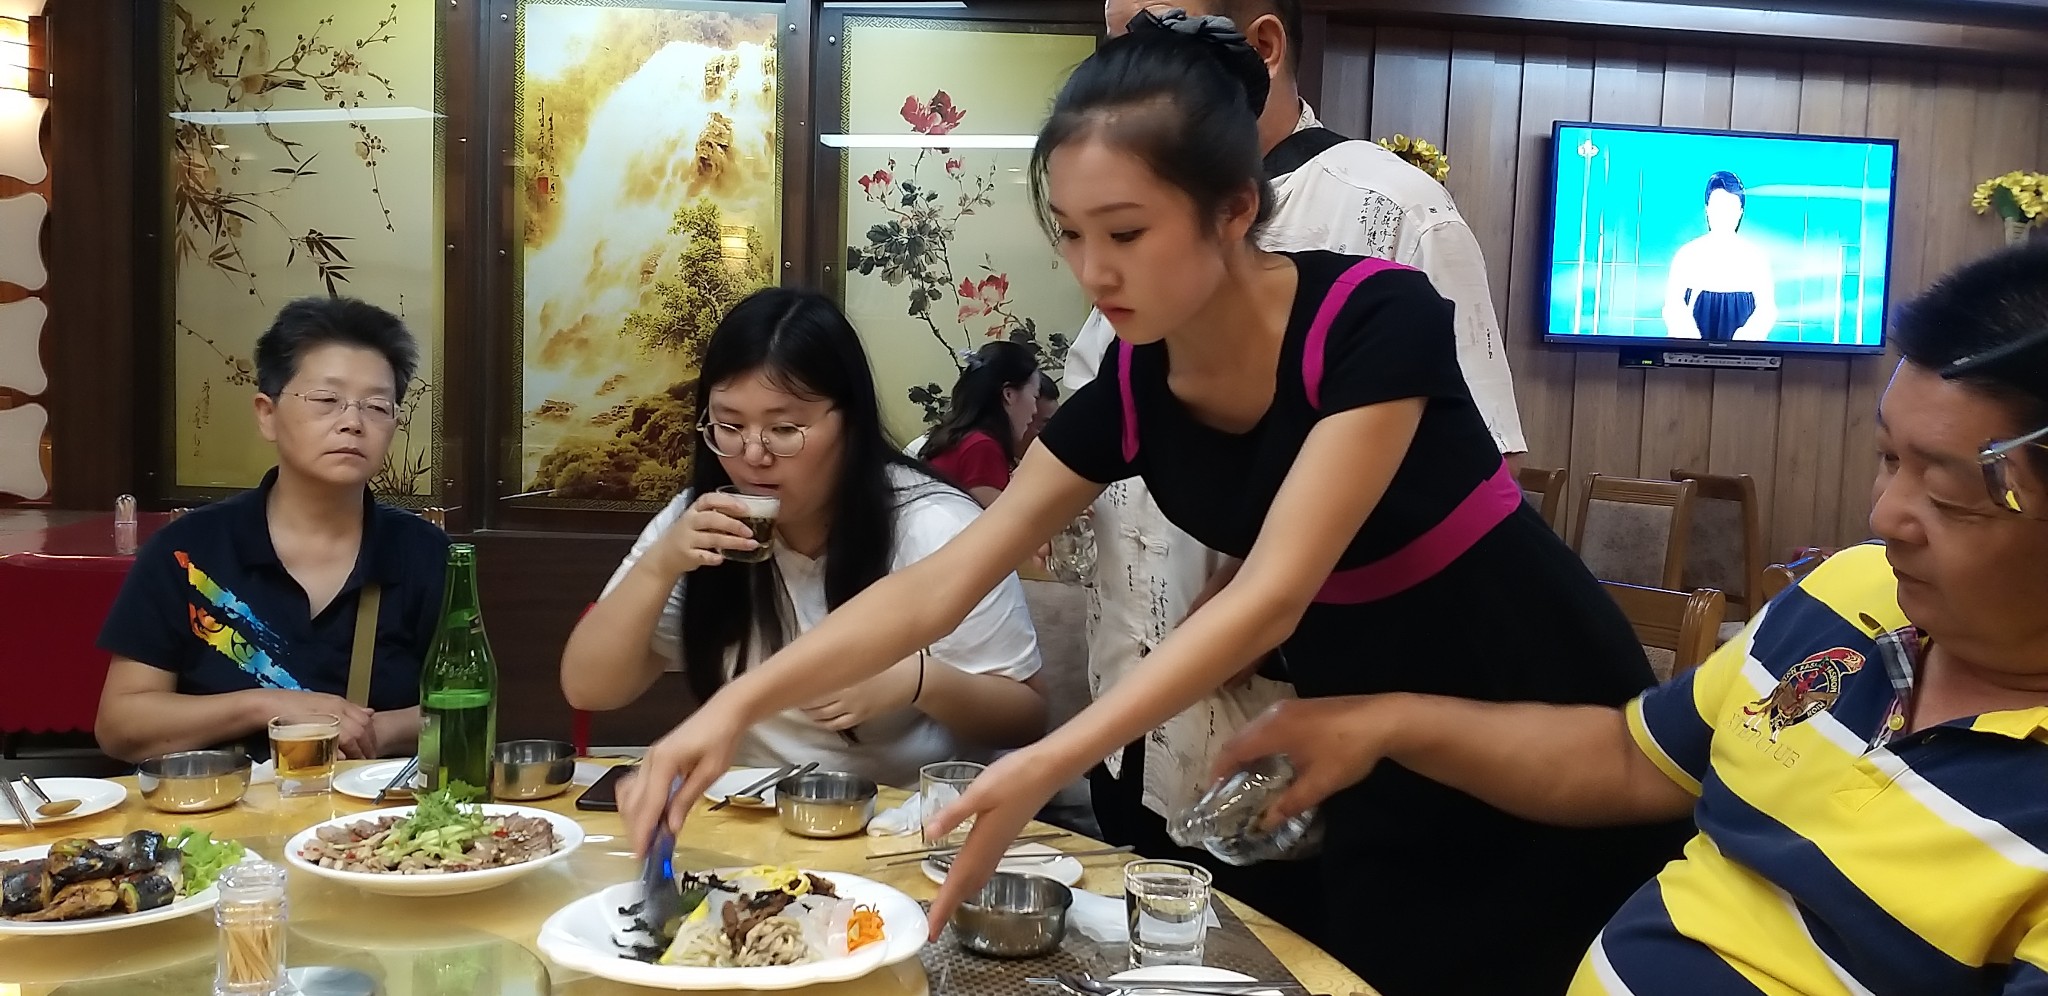 图为朝鲜一家涉外餐馆的女服务员,正在为游客上菜的她长得很漂亮.